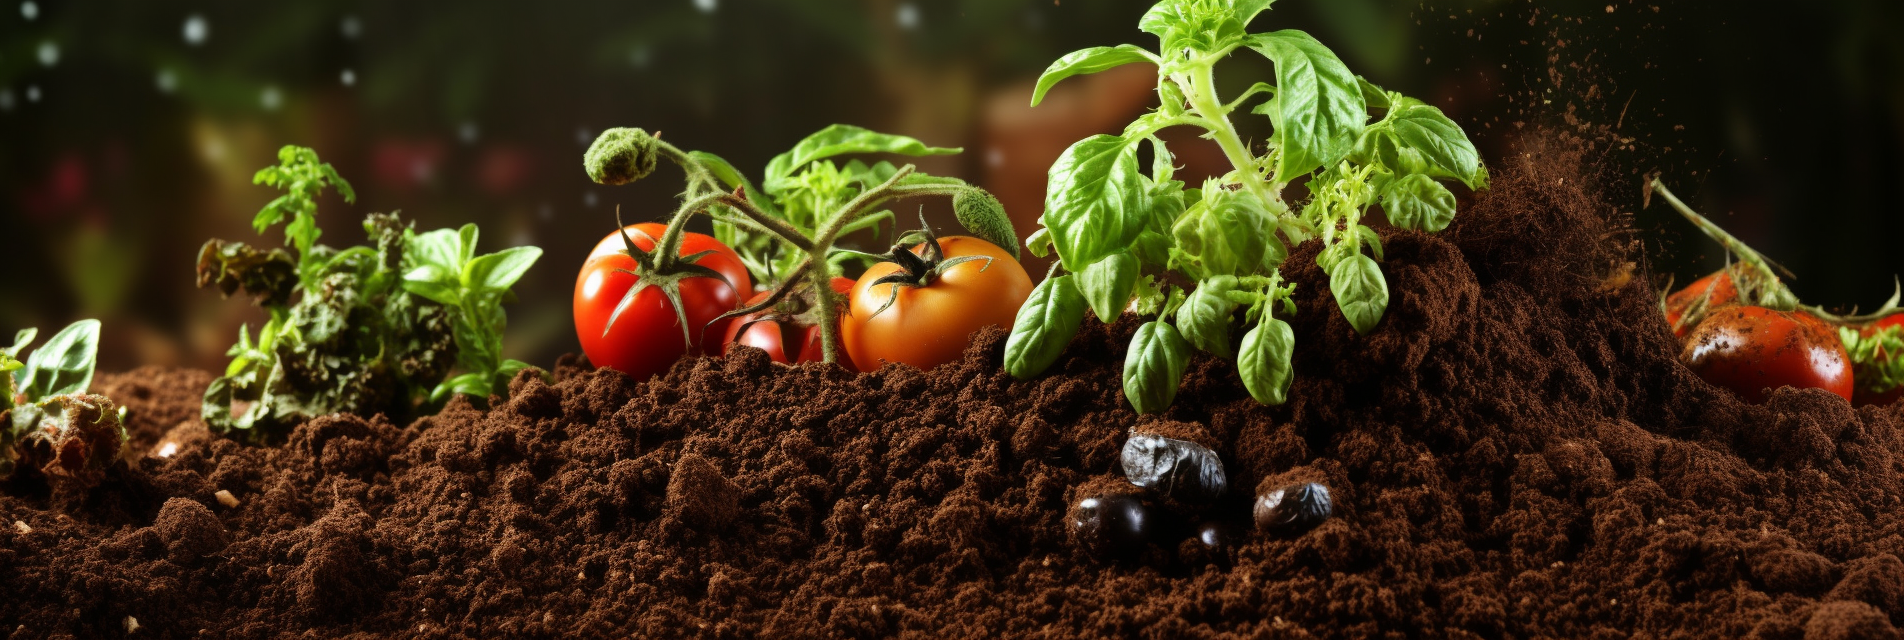 How to make home-made organic fertilizer?